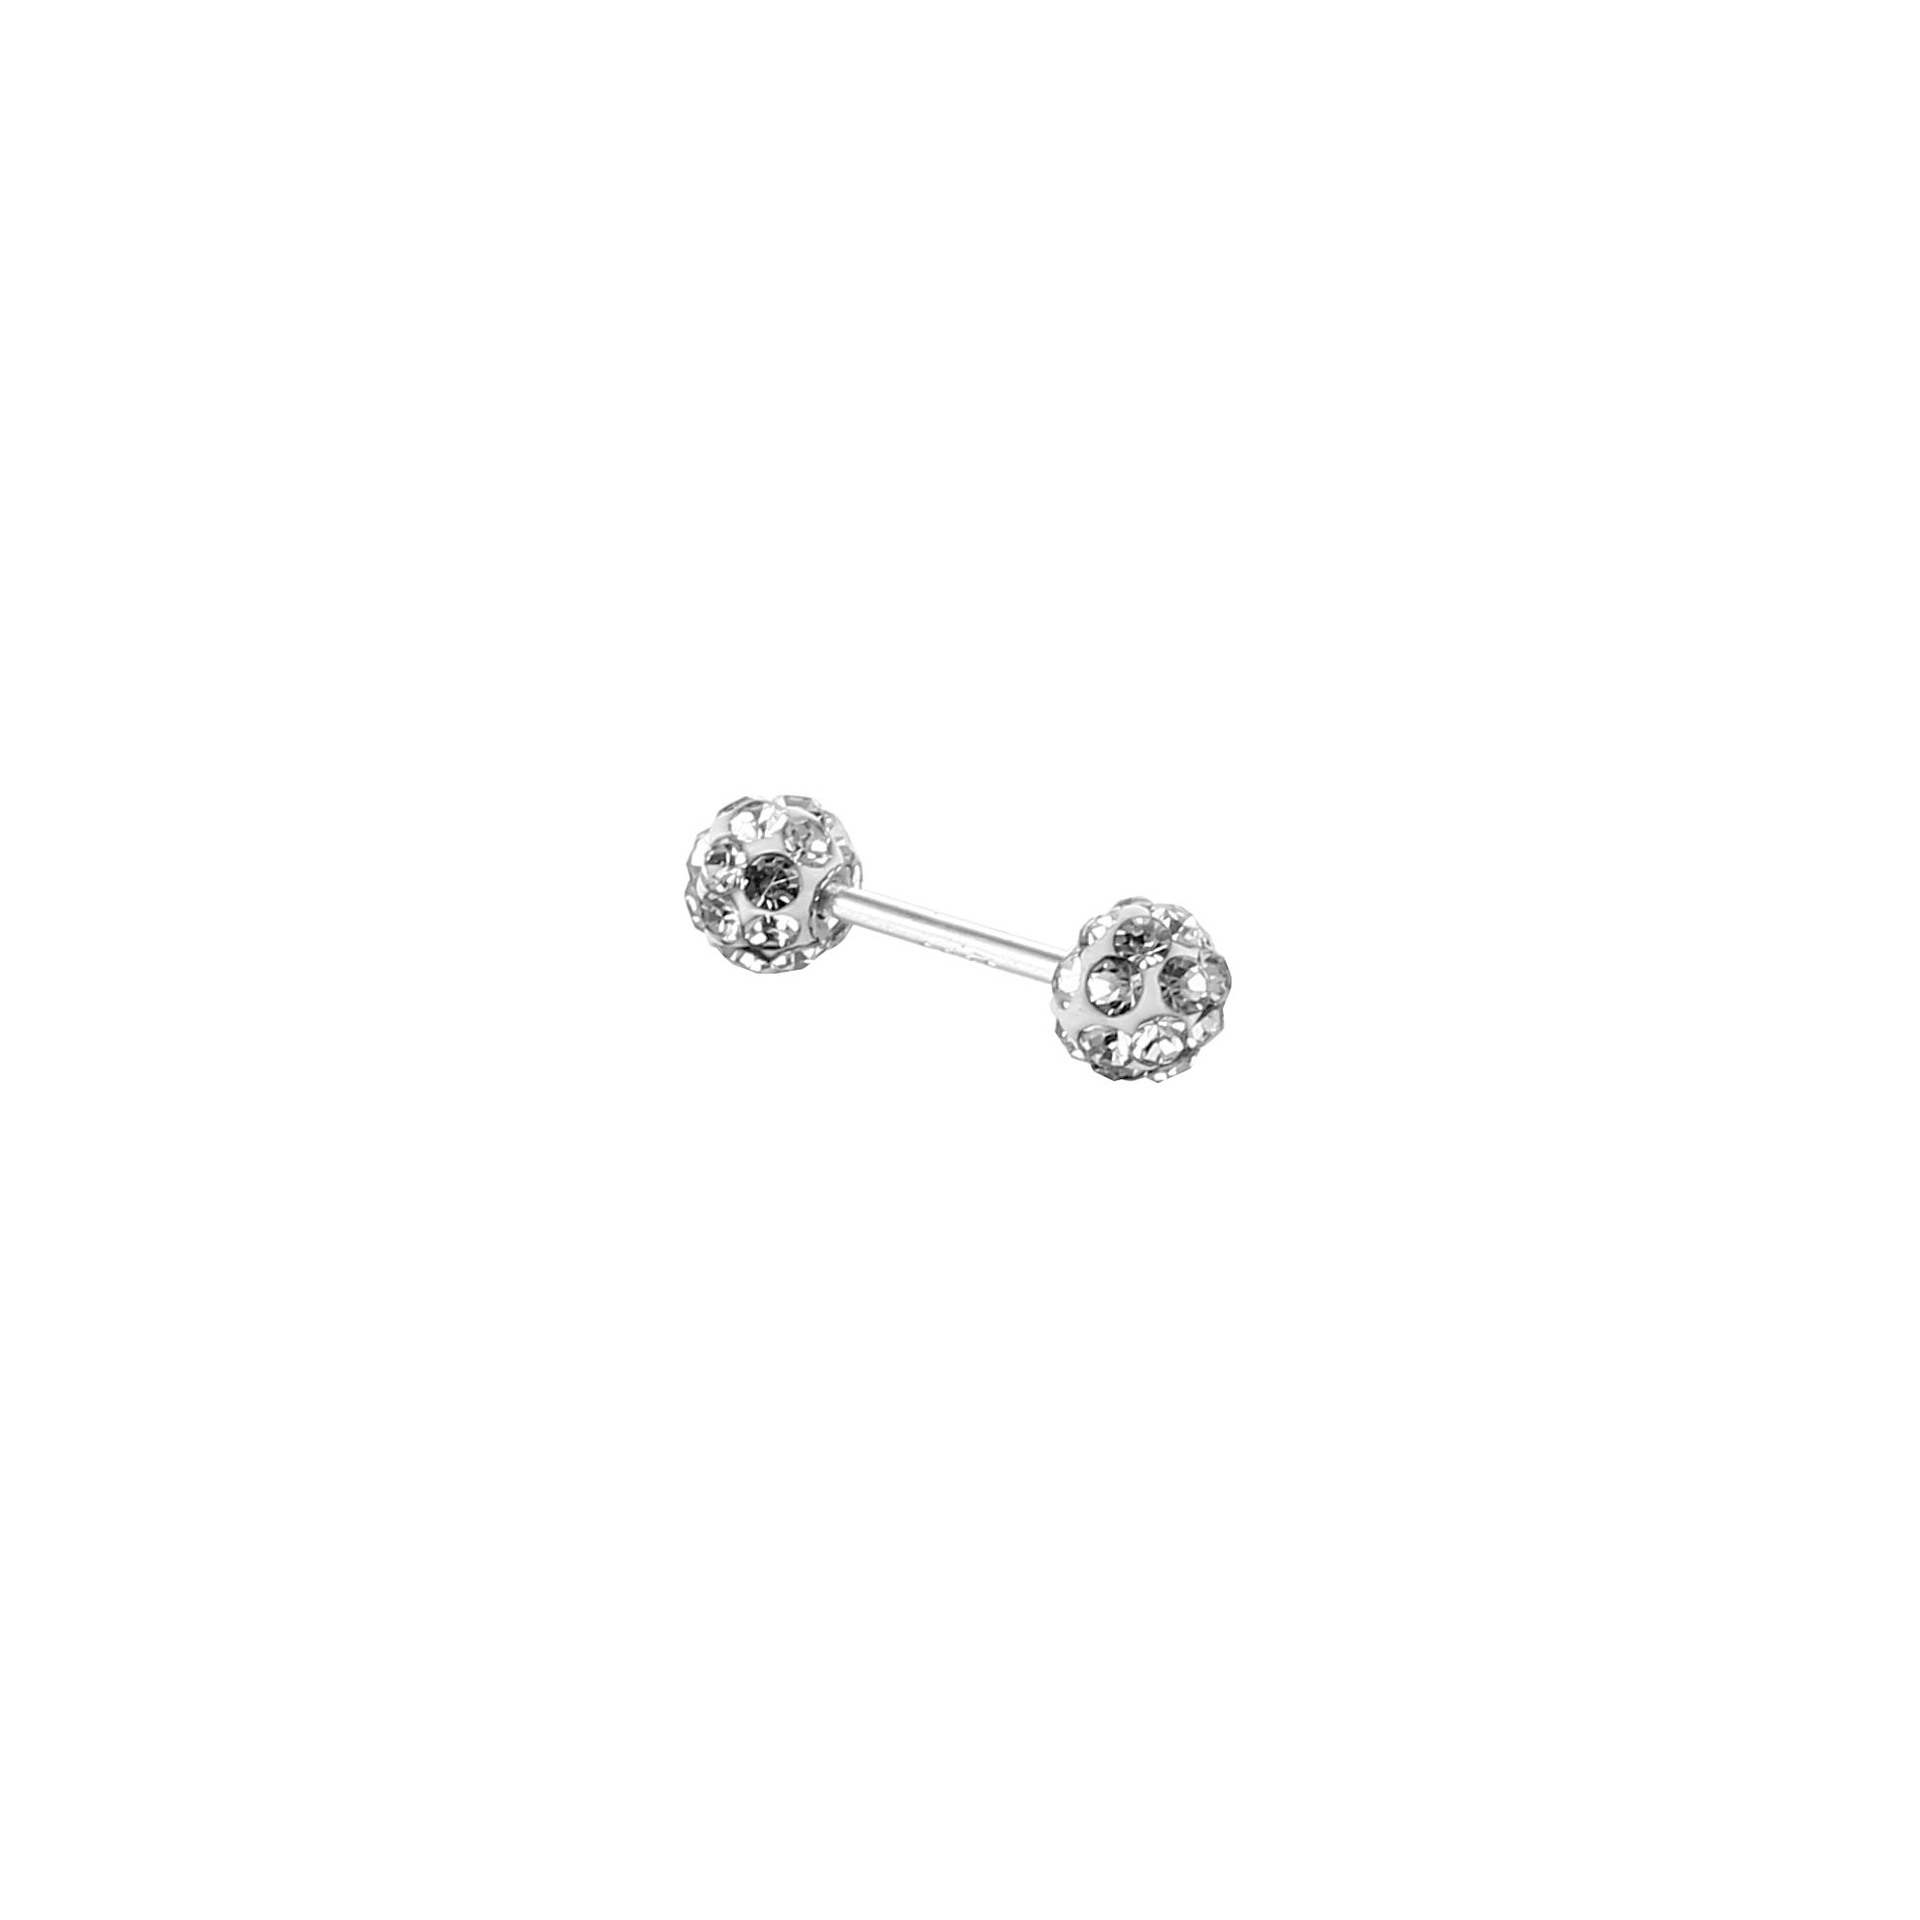 Cross-Border E-Commerce Stainless Steel/925 Silver Piercing Jewelry New Korean Fashion Rhinestone Ball Eardrops Earrings Earrings